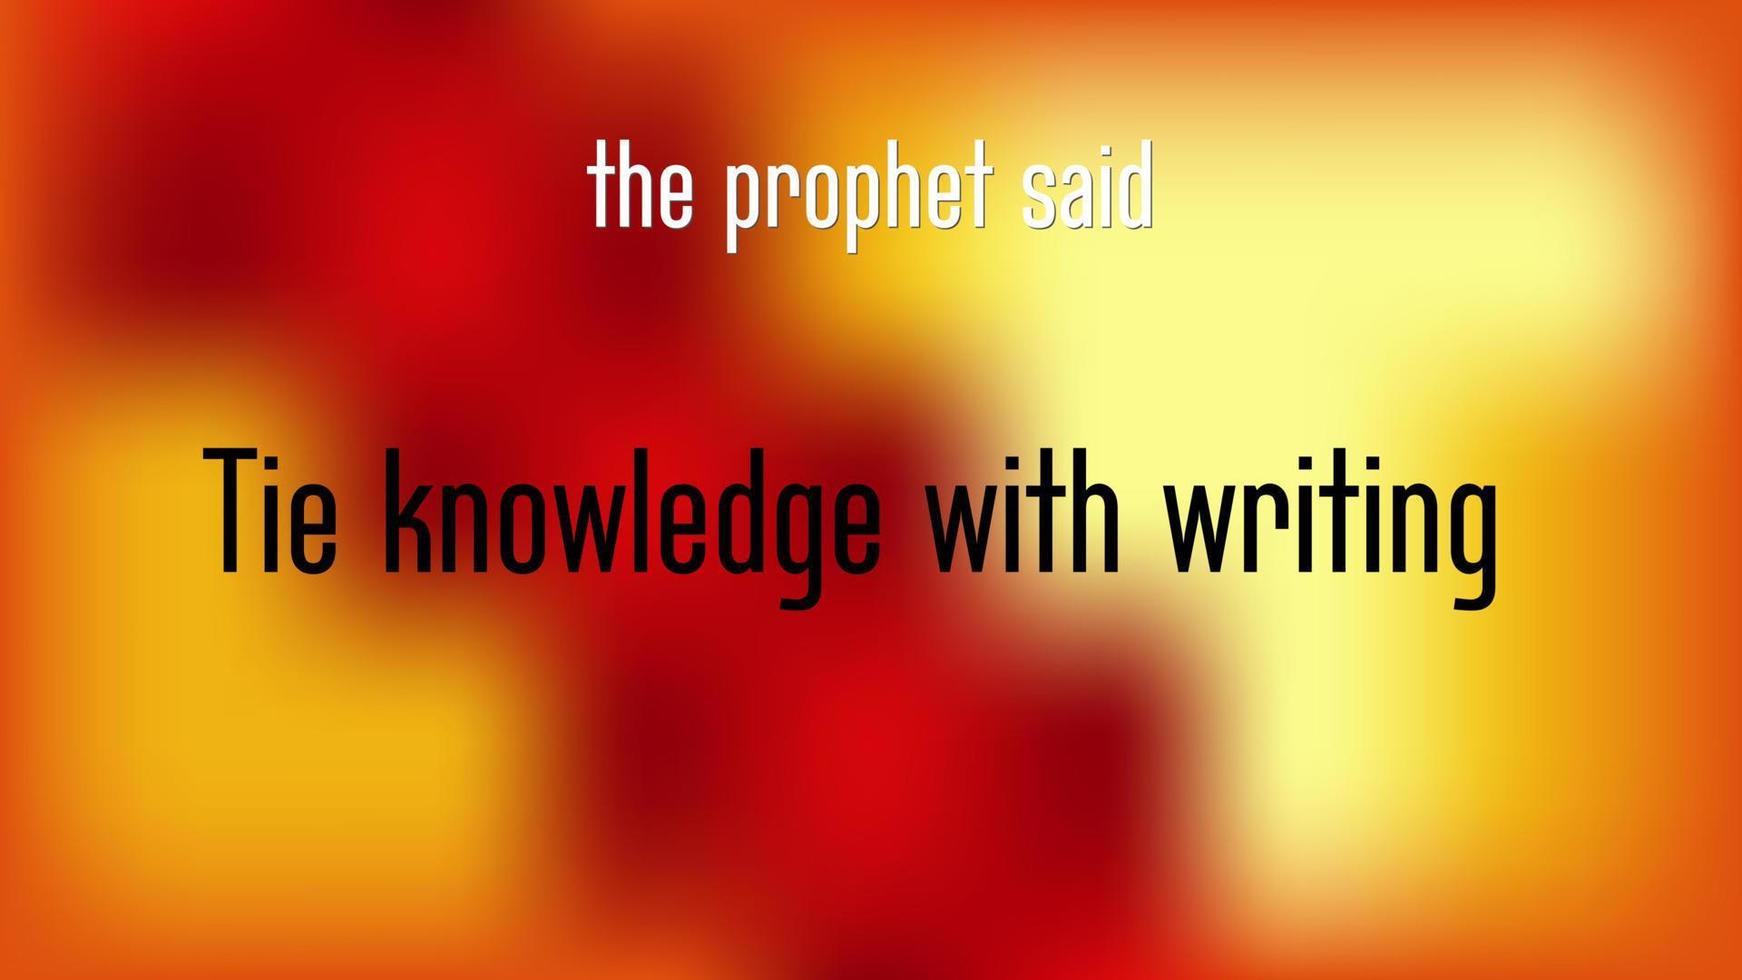 islamiskt citat som kommer från profeten Muhammeds ord. knyta kunskap med skrivande vektor